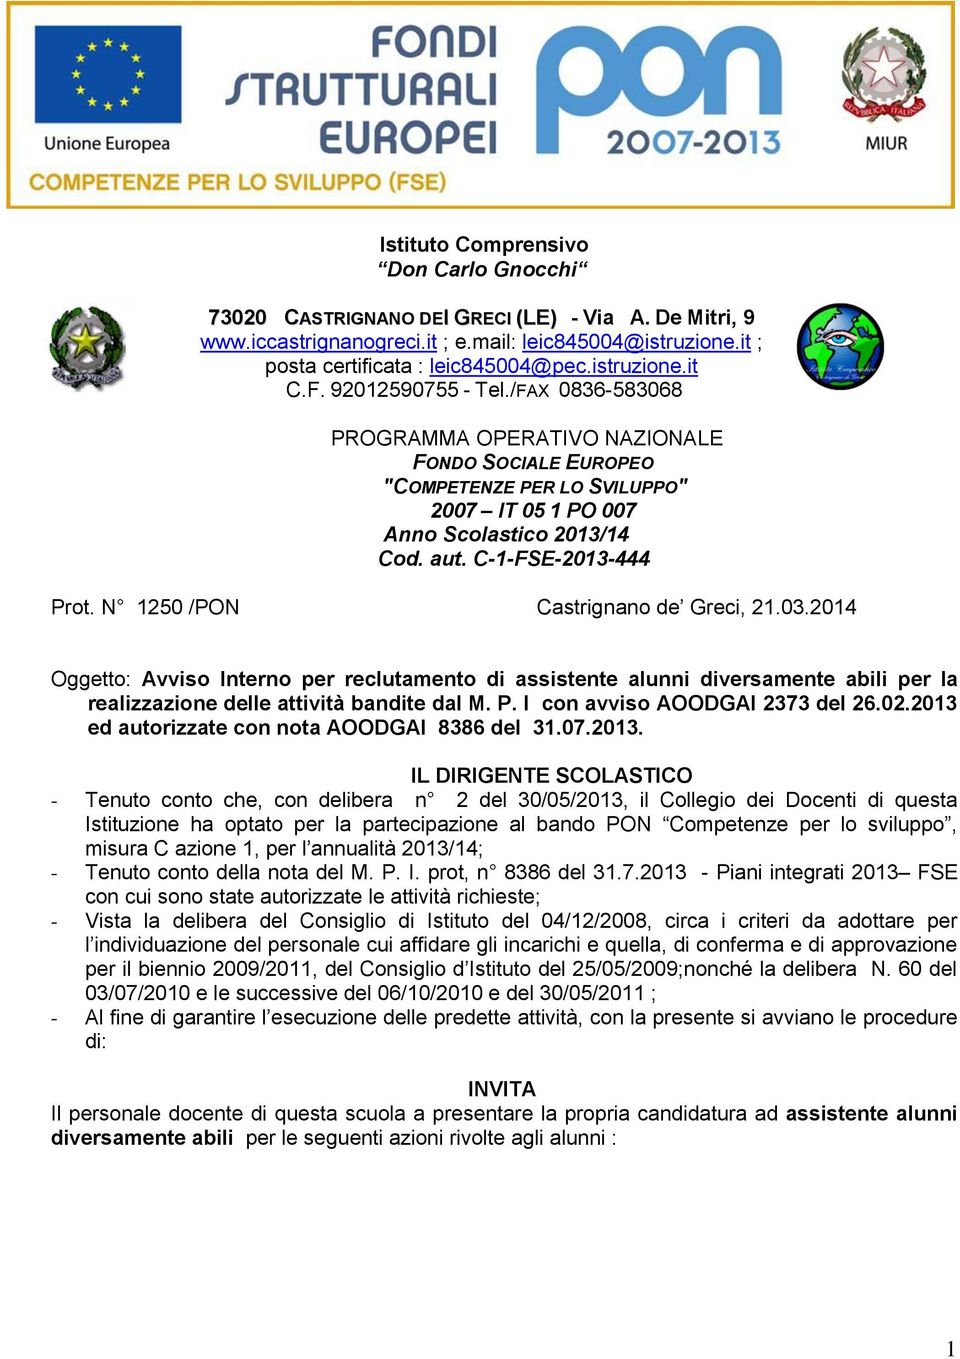 C-1-FSE-2013-444 Prot. N 1250 /PON Castrignano de Greci, 21.03.2014 Oggetto: Avviso Interno per reclutamento di assistente alunni abili per la realizzazione delle attività bandite dal M. P. I con avviso AOODGAI 2373 del 26.